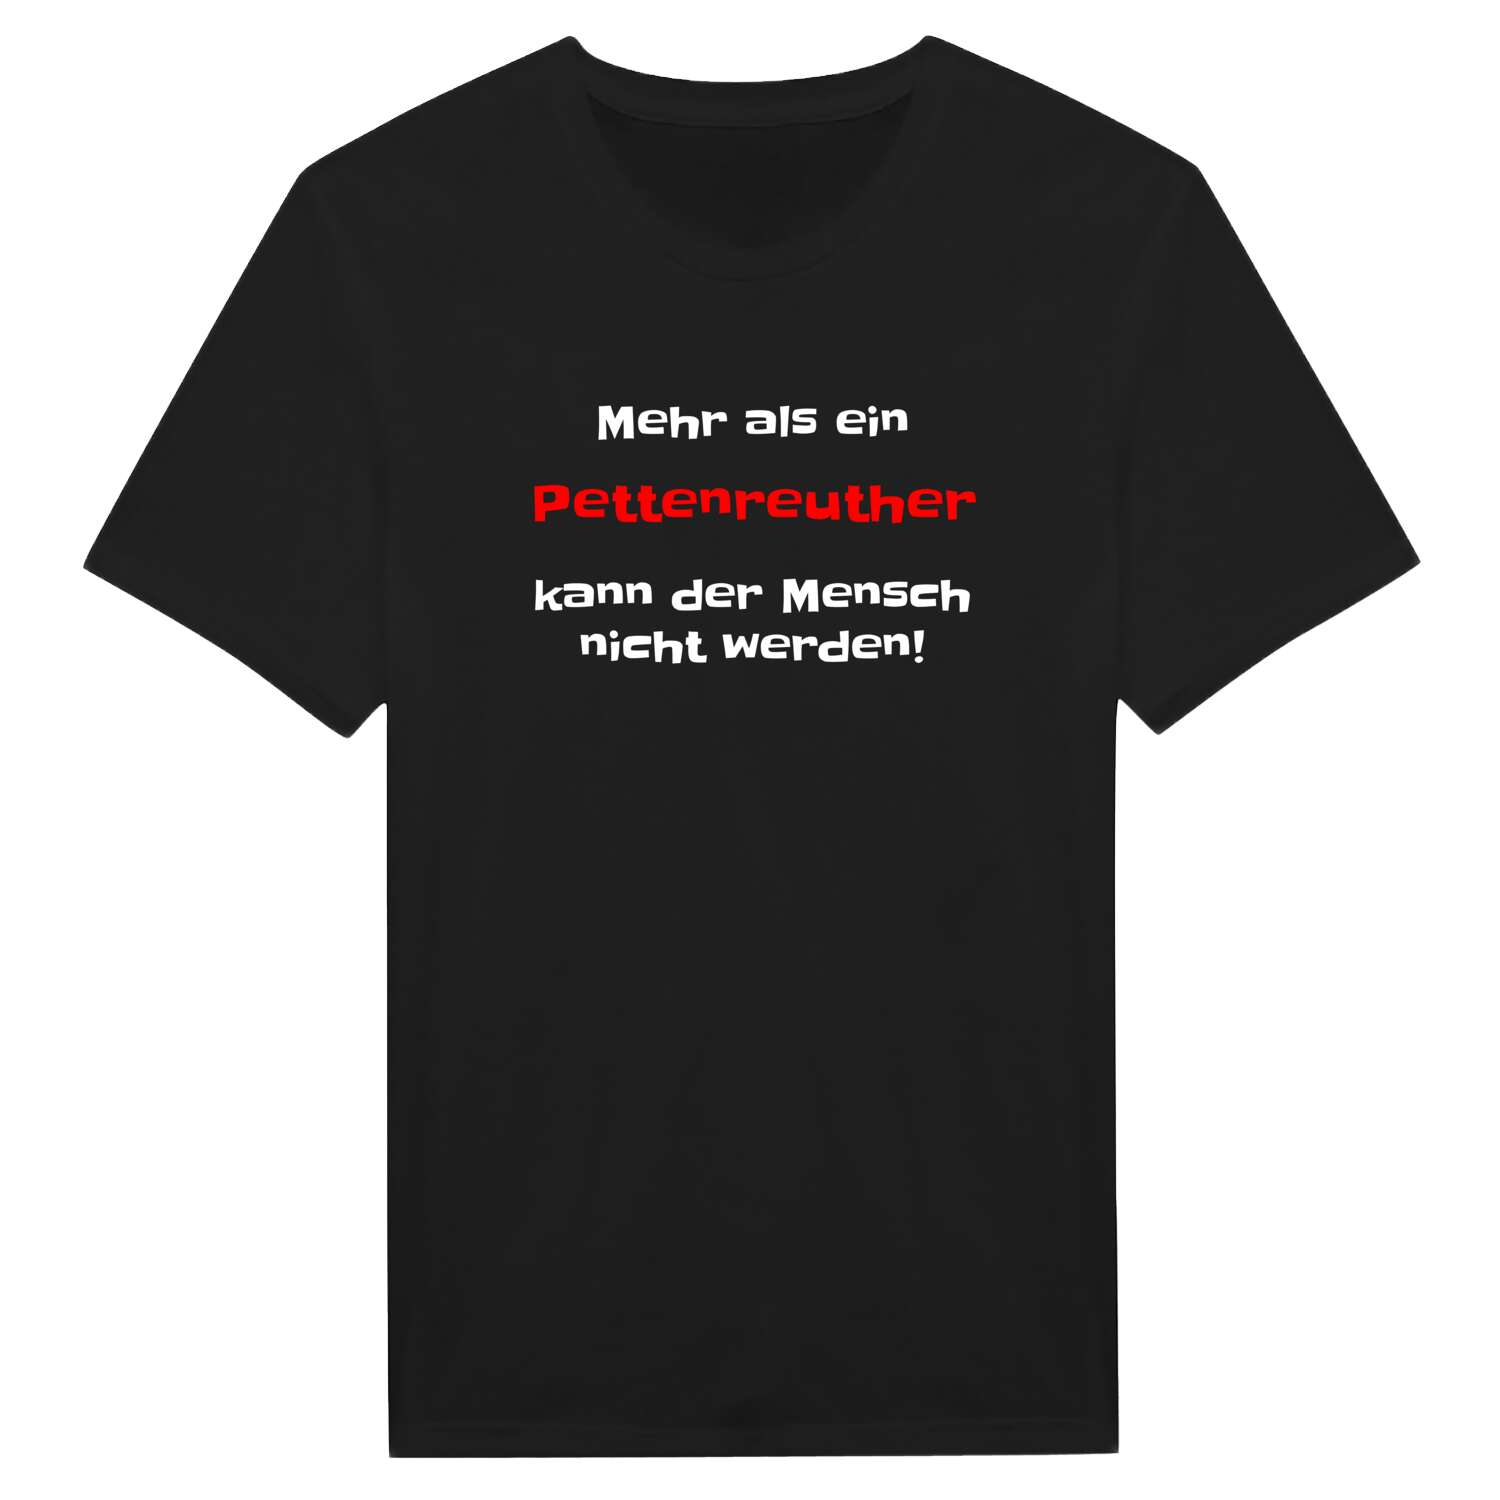 Pettenreuth T-Shirt »Mehr als ein«